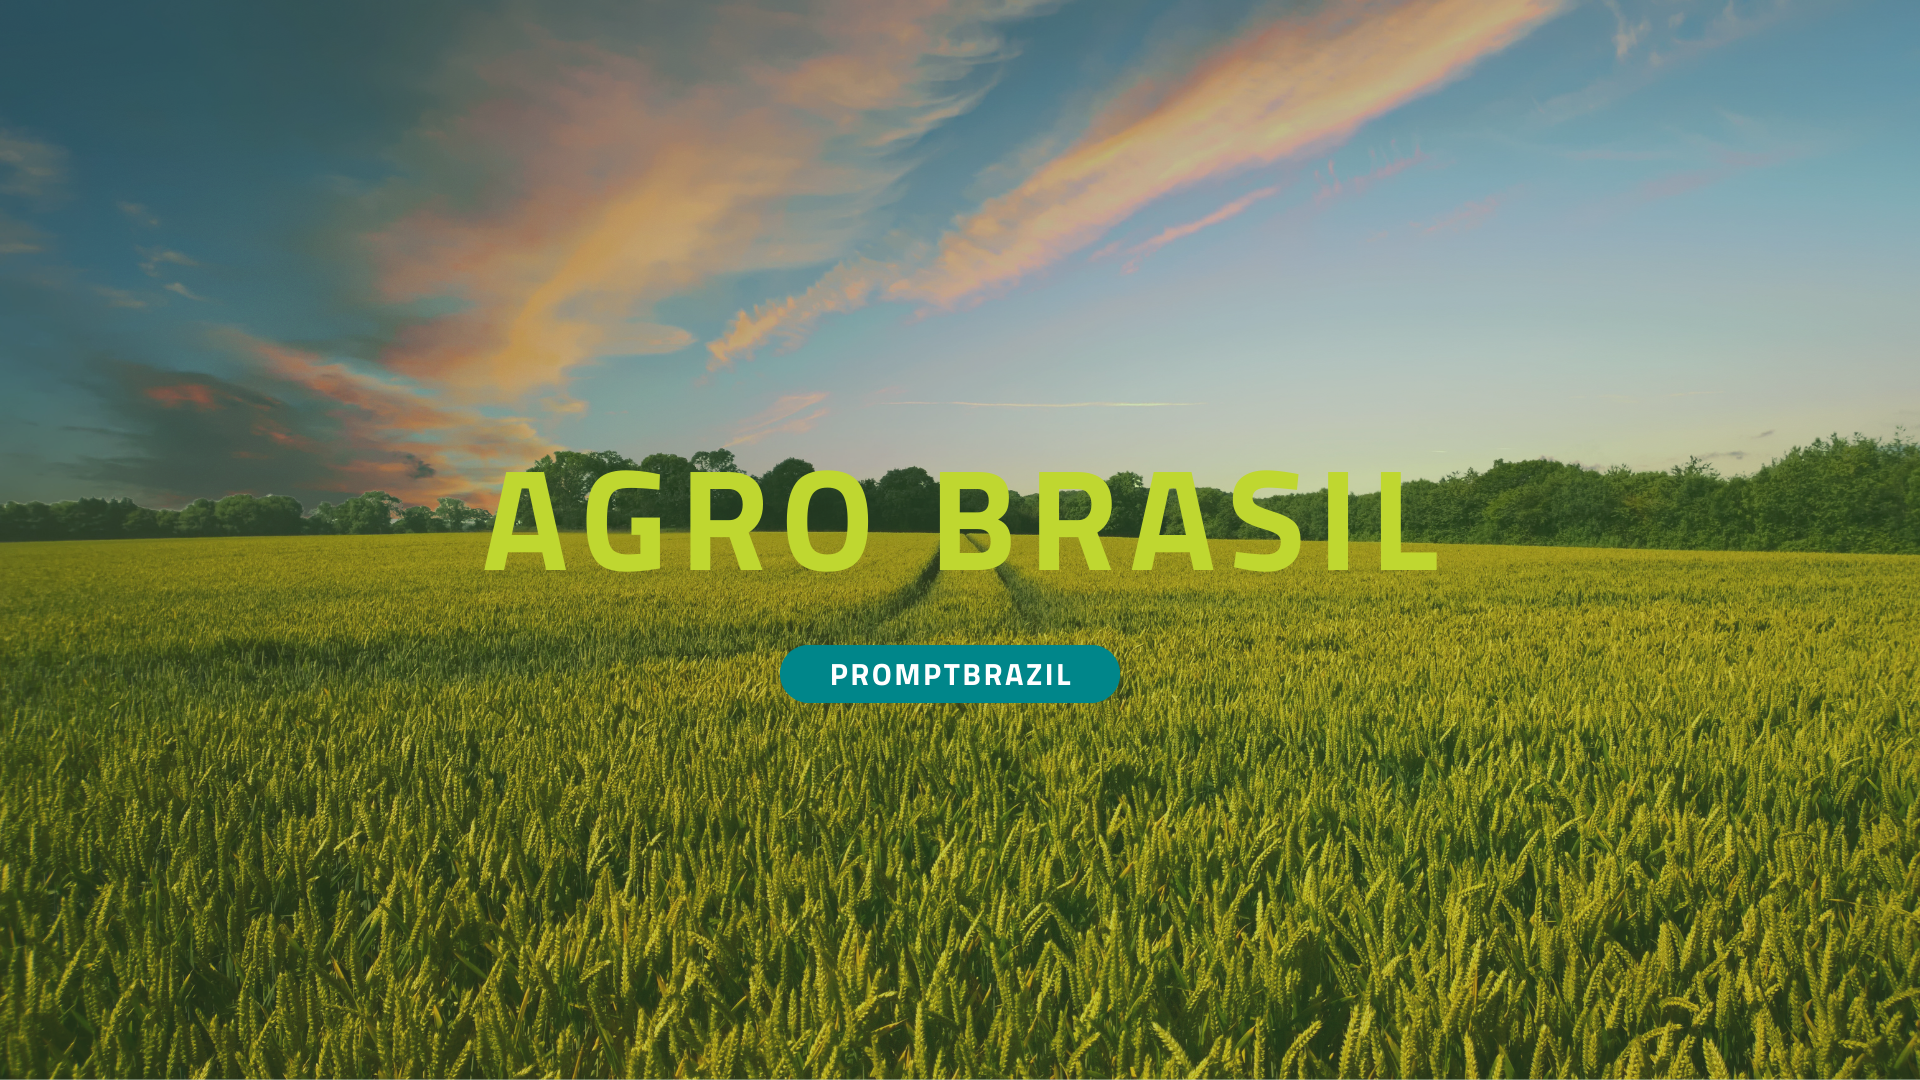 Hoje a prompt comenta todos os indicadores positivos do agronegocio brasileiro, acompanhe